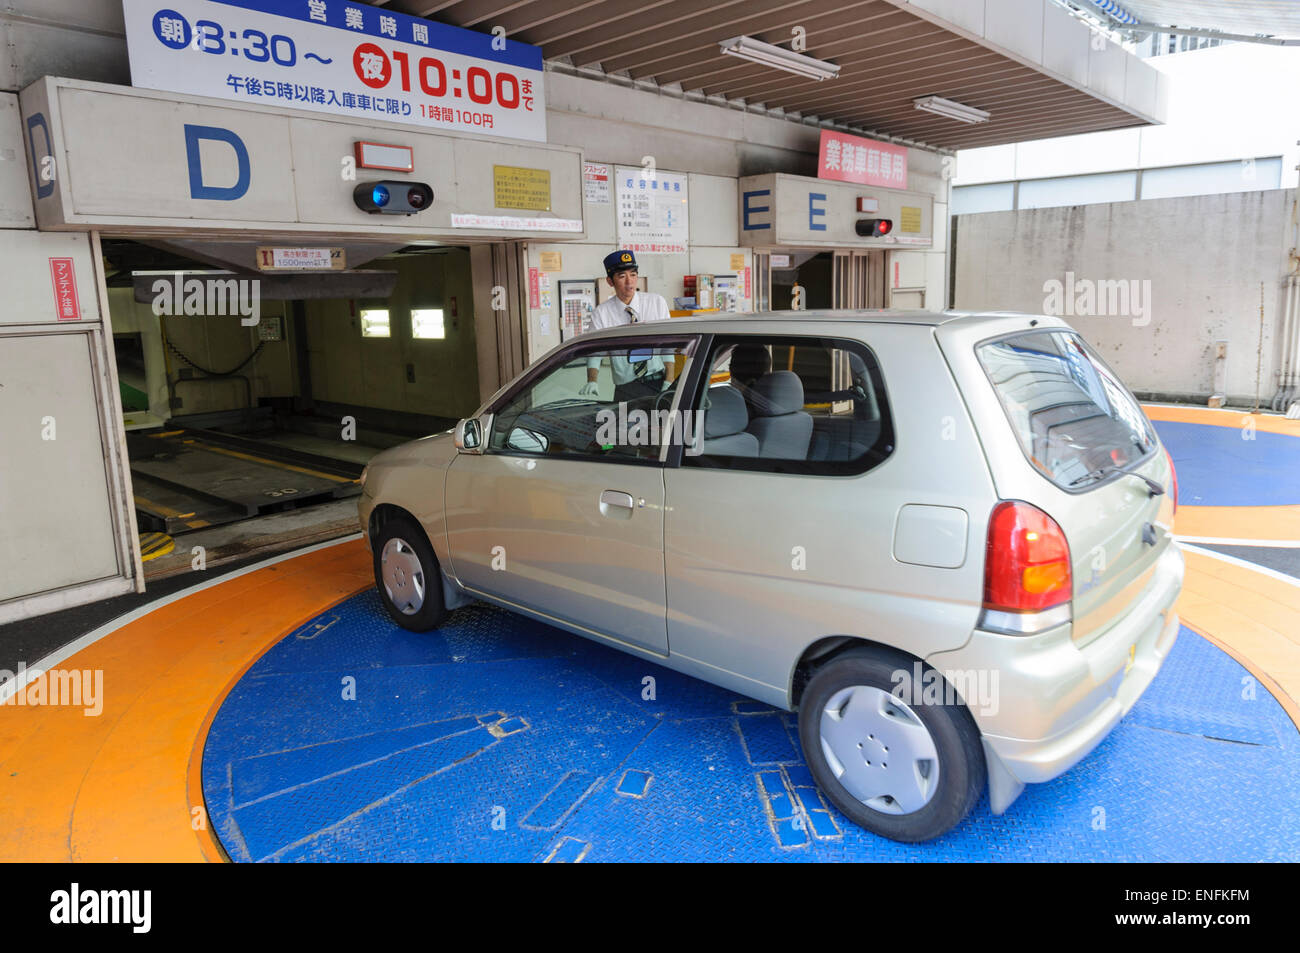 Petite voiture japonaise sur une couronne, l'entrée d'un vertical automatique, parking. Parking Parking voiture ; voiture ; kei jidosha kei ; Japon ; très petite voiture Banque D'Images